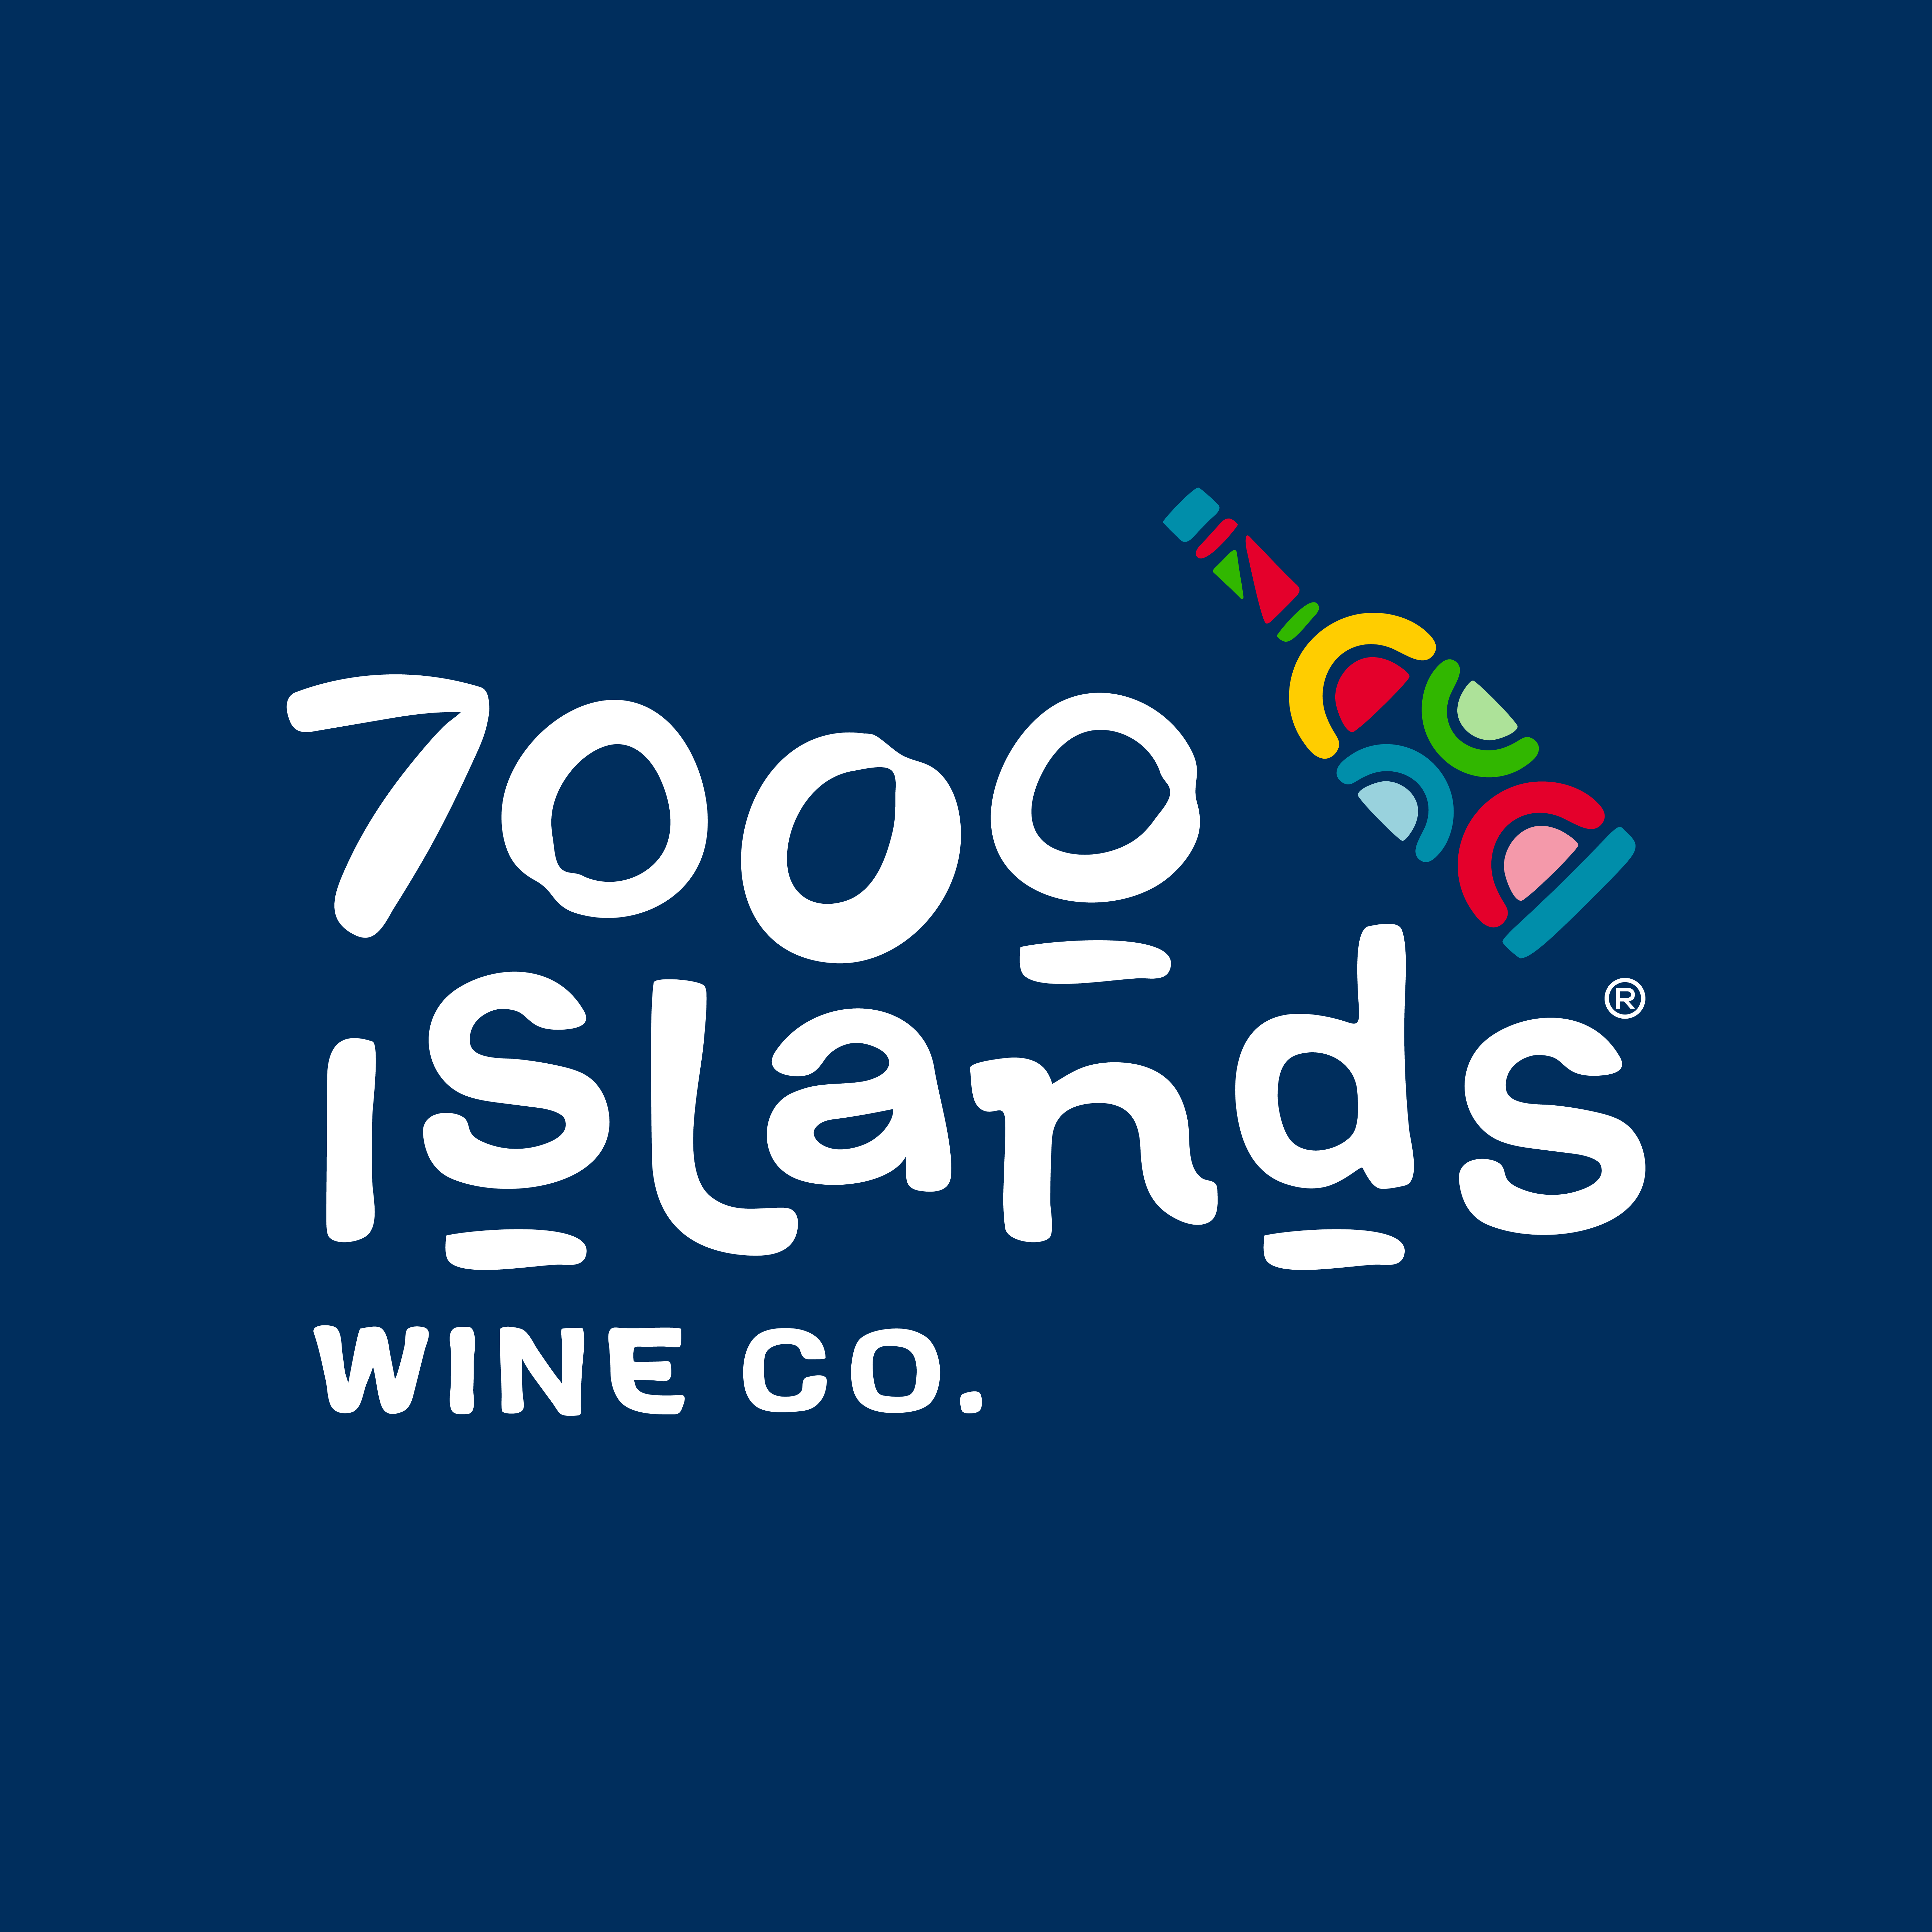 7000 Islands